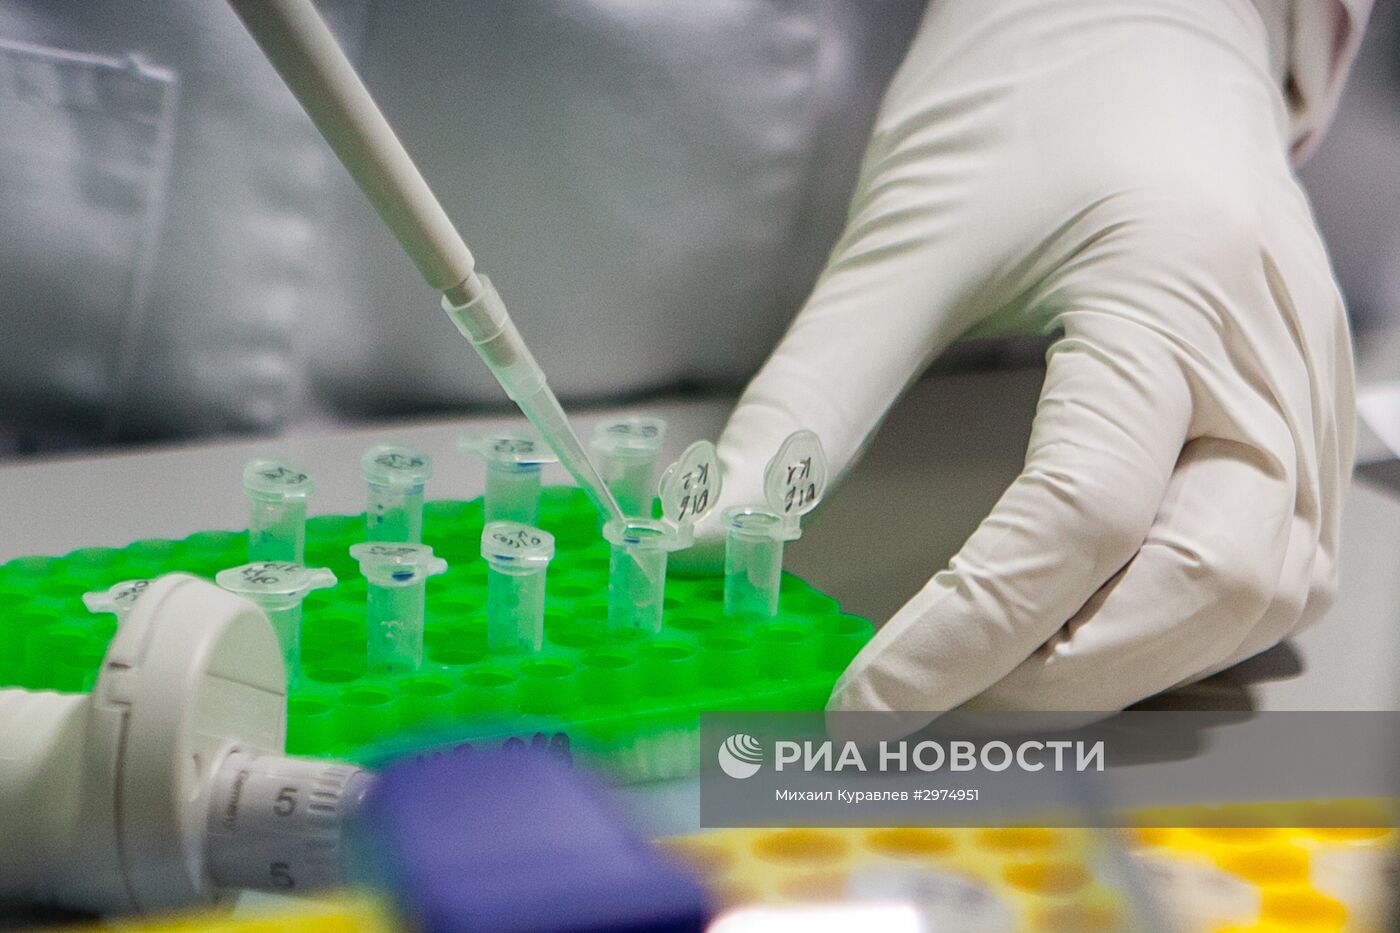 Биотехнологическая компания Biocad в Санкт-Петербурге